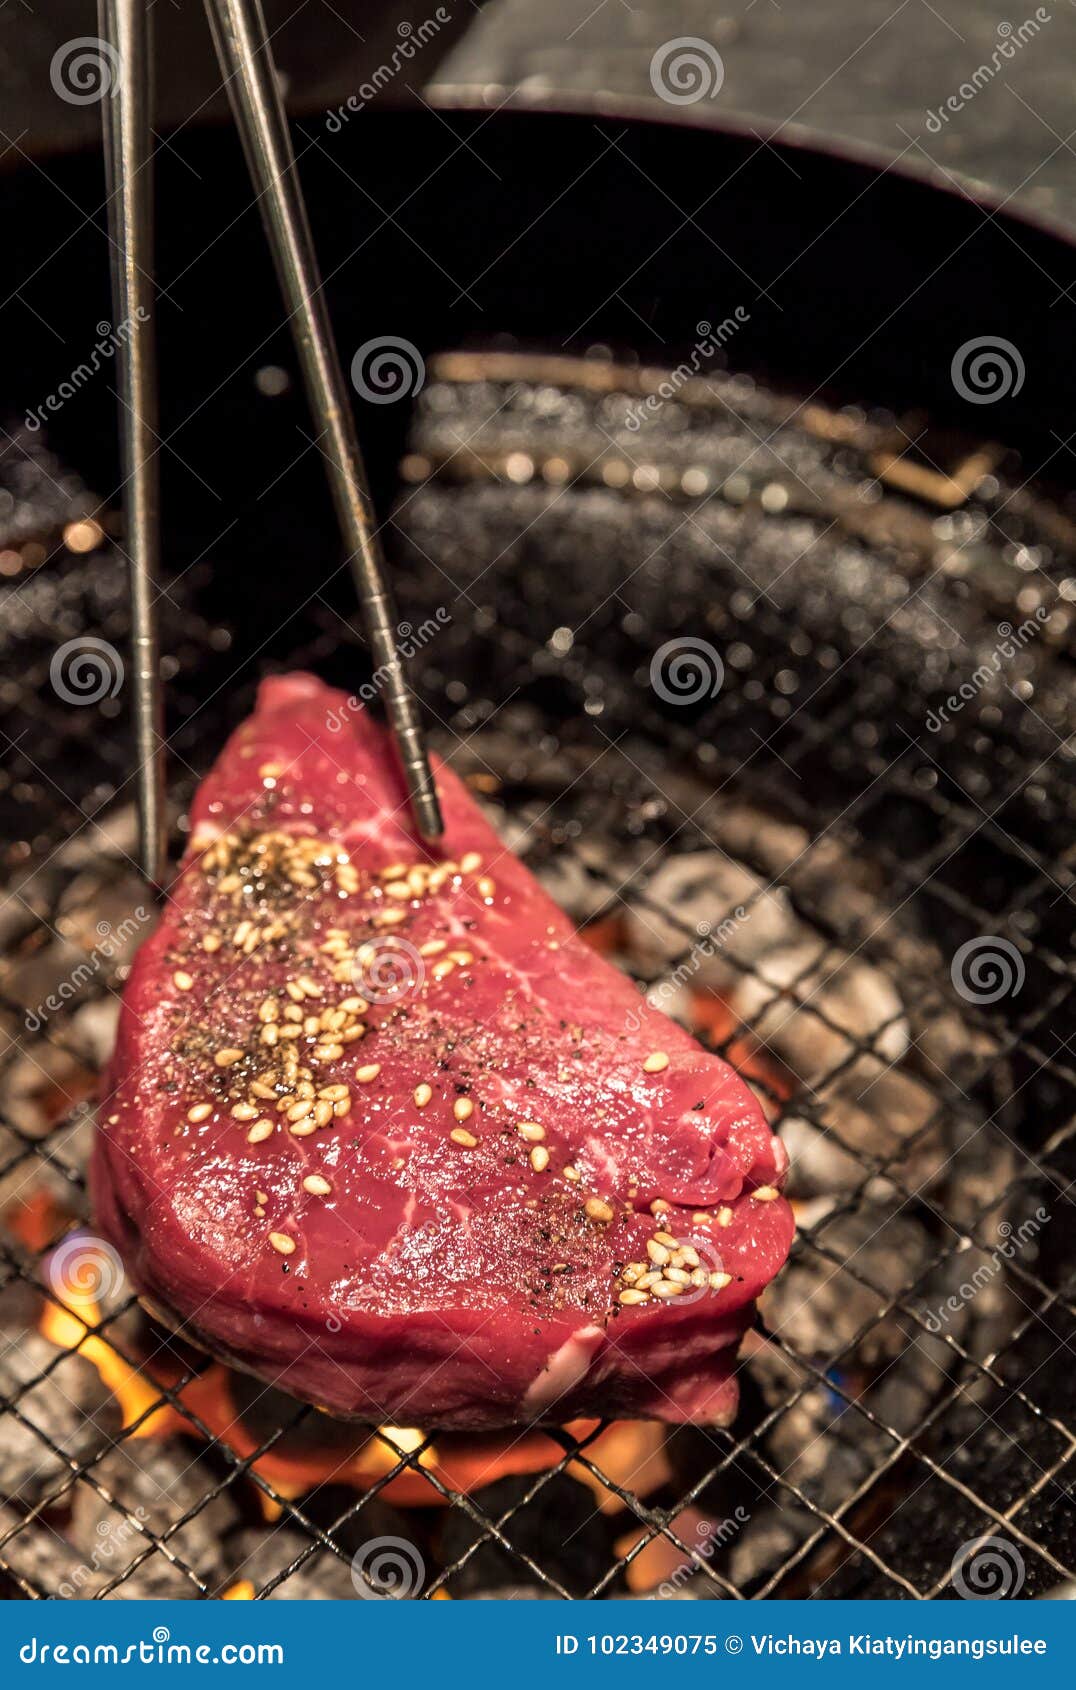 Yakiniku beef grilled stock image. Image of grilled - 102349075